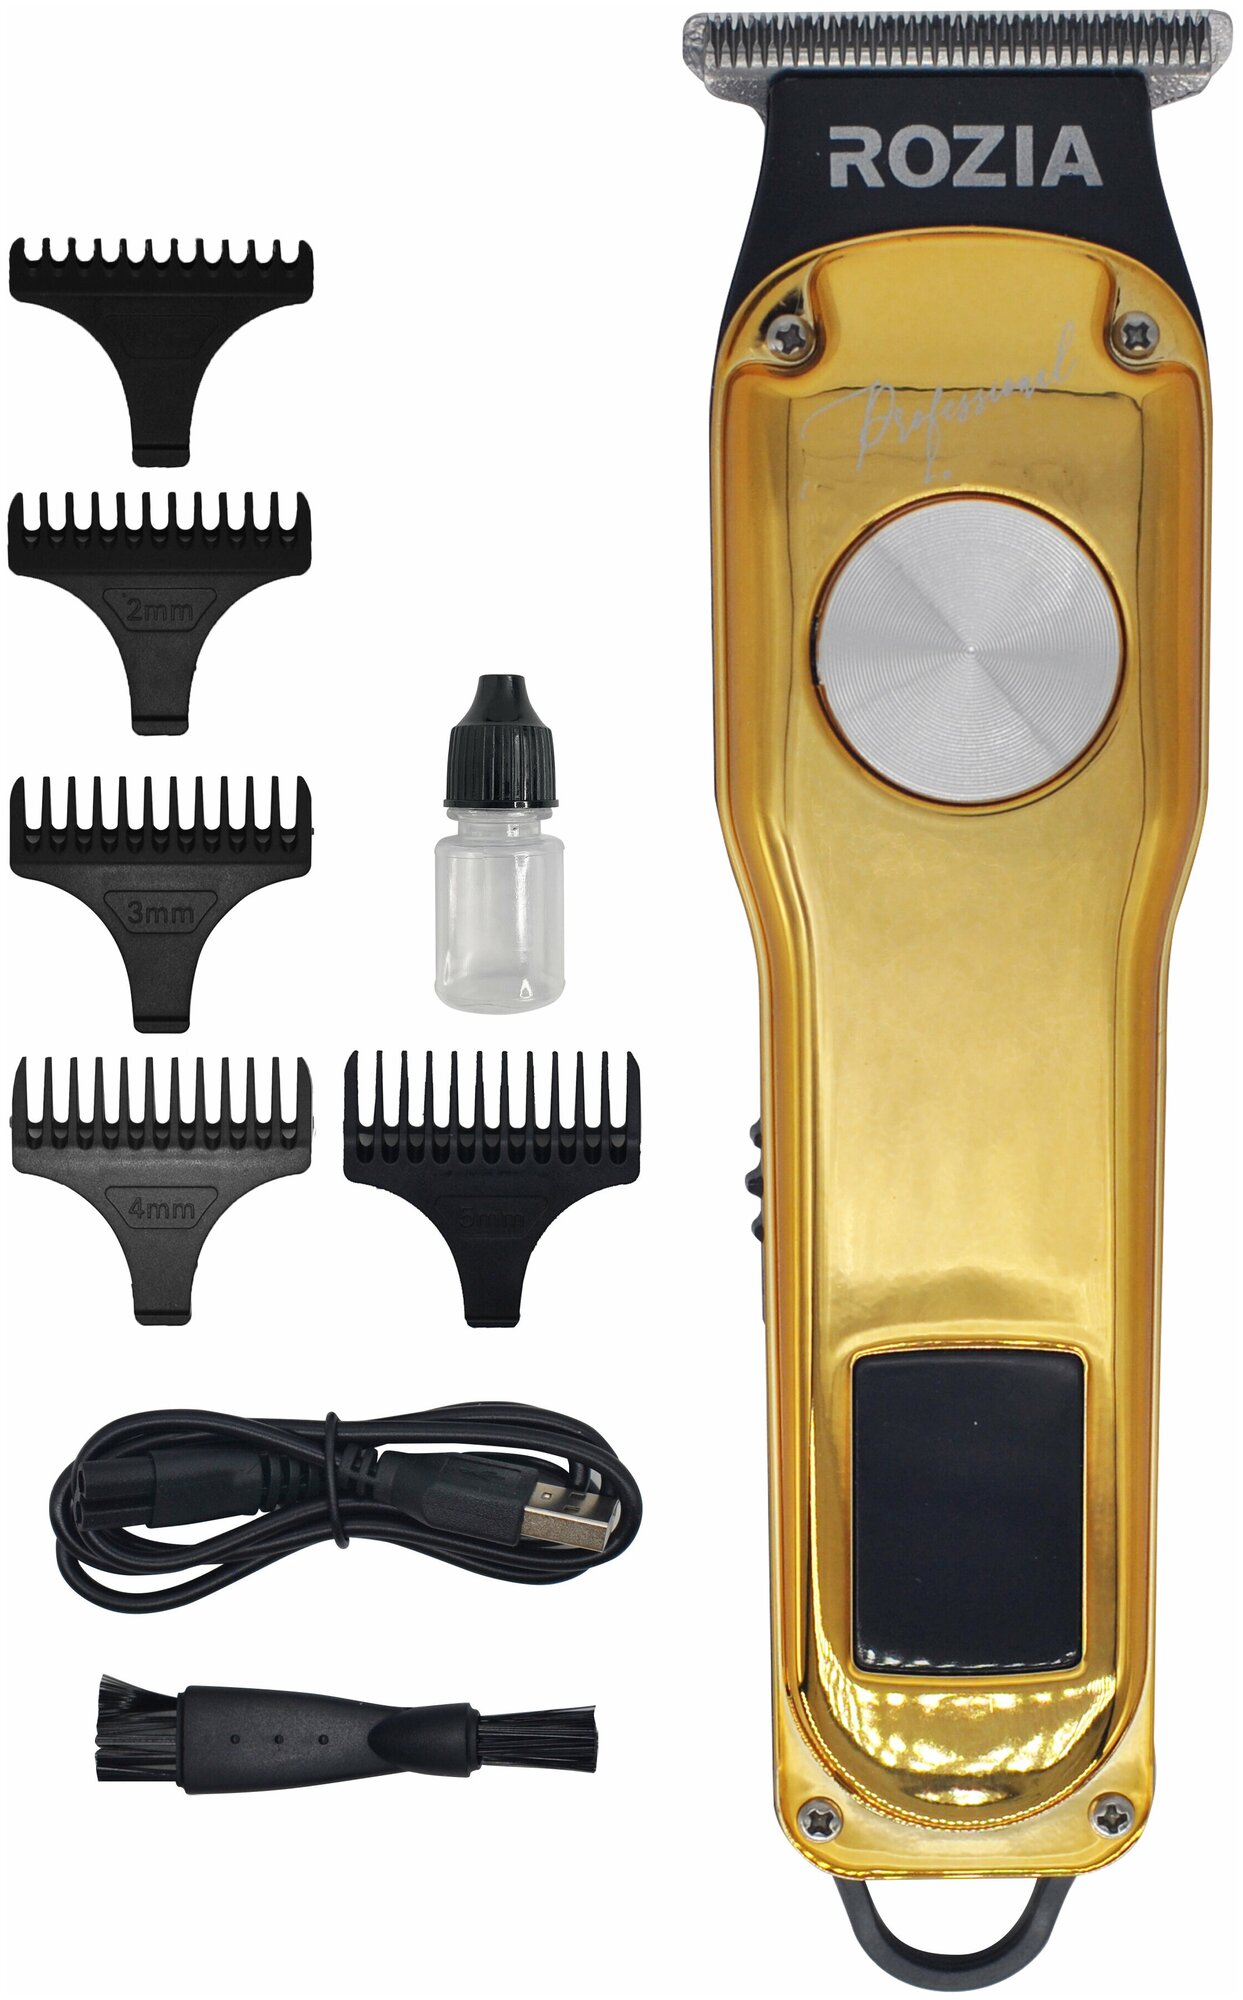 Профессиональная машинка для стрижки волос RoziaPro , уход за лицом, Триммер RoziaPro, серебристый, для оконтовки, с LED дисплеем, золотой - фотография № 5